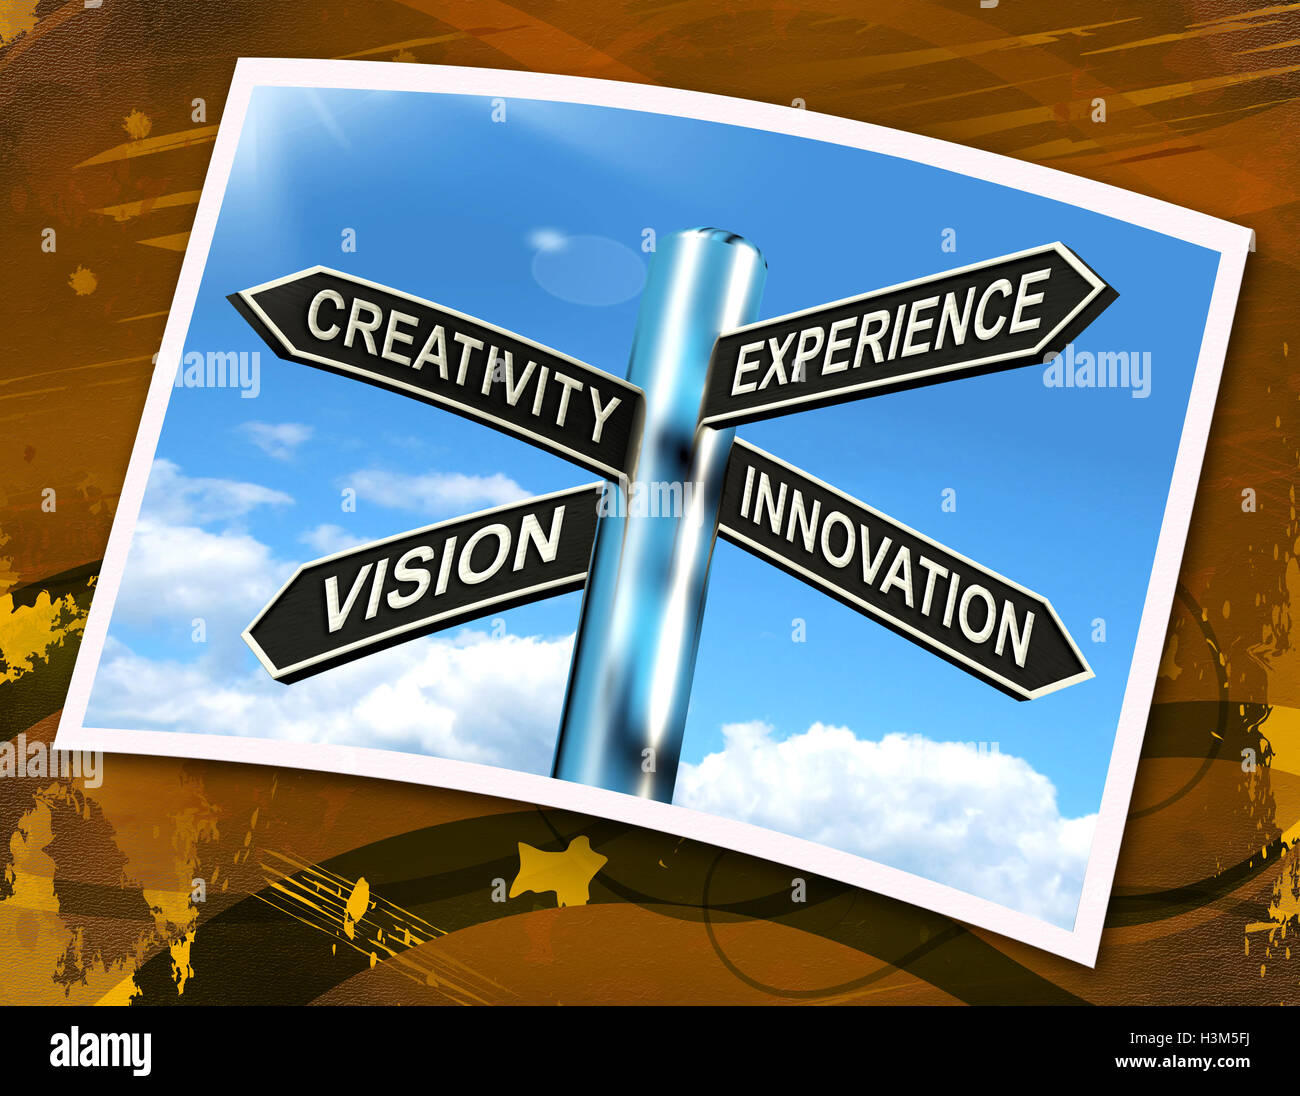 Experiencia creatividad Innovación Visión signo significa Business Deve Foto de stock